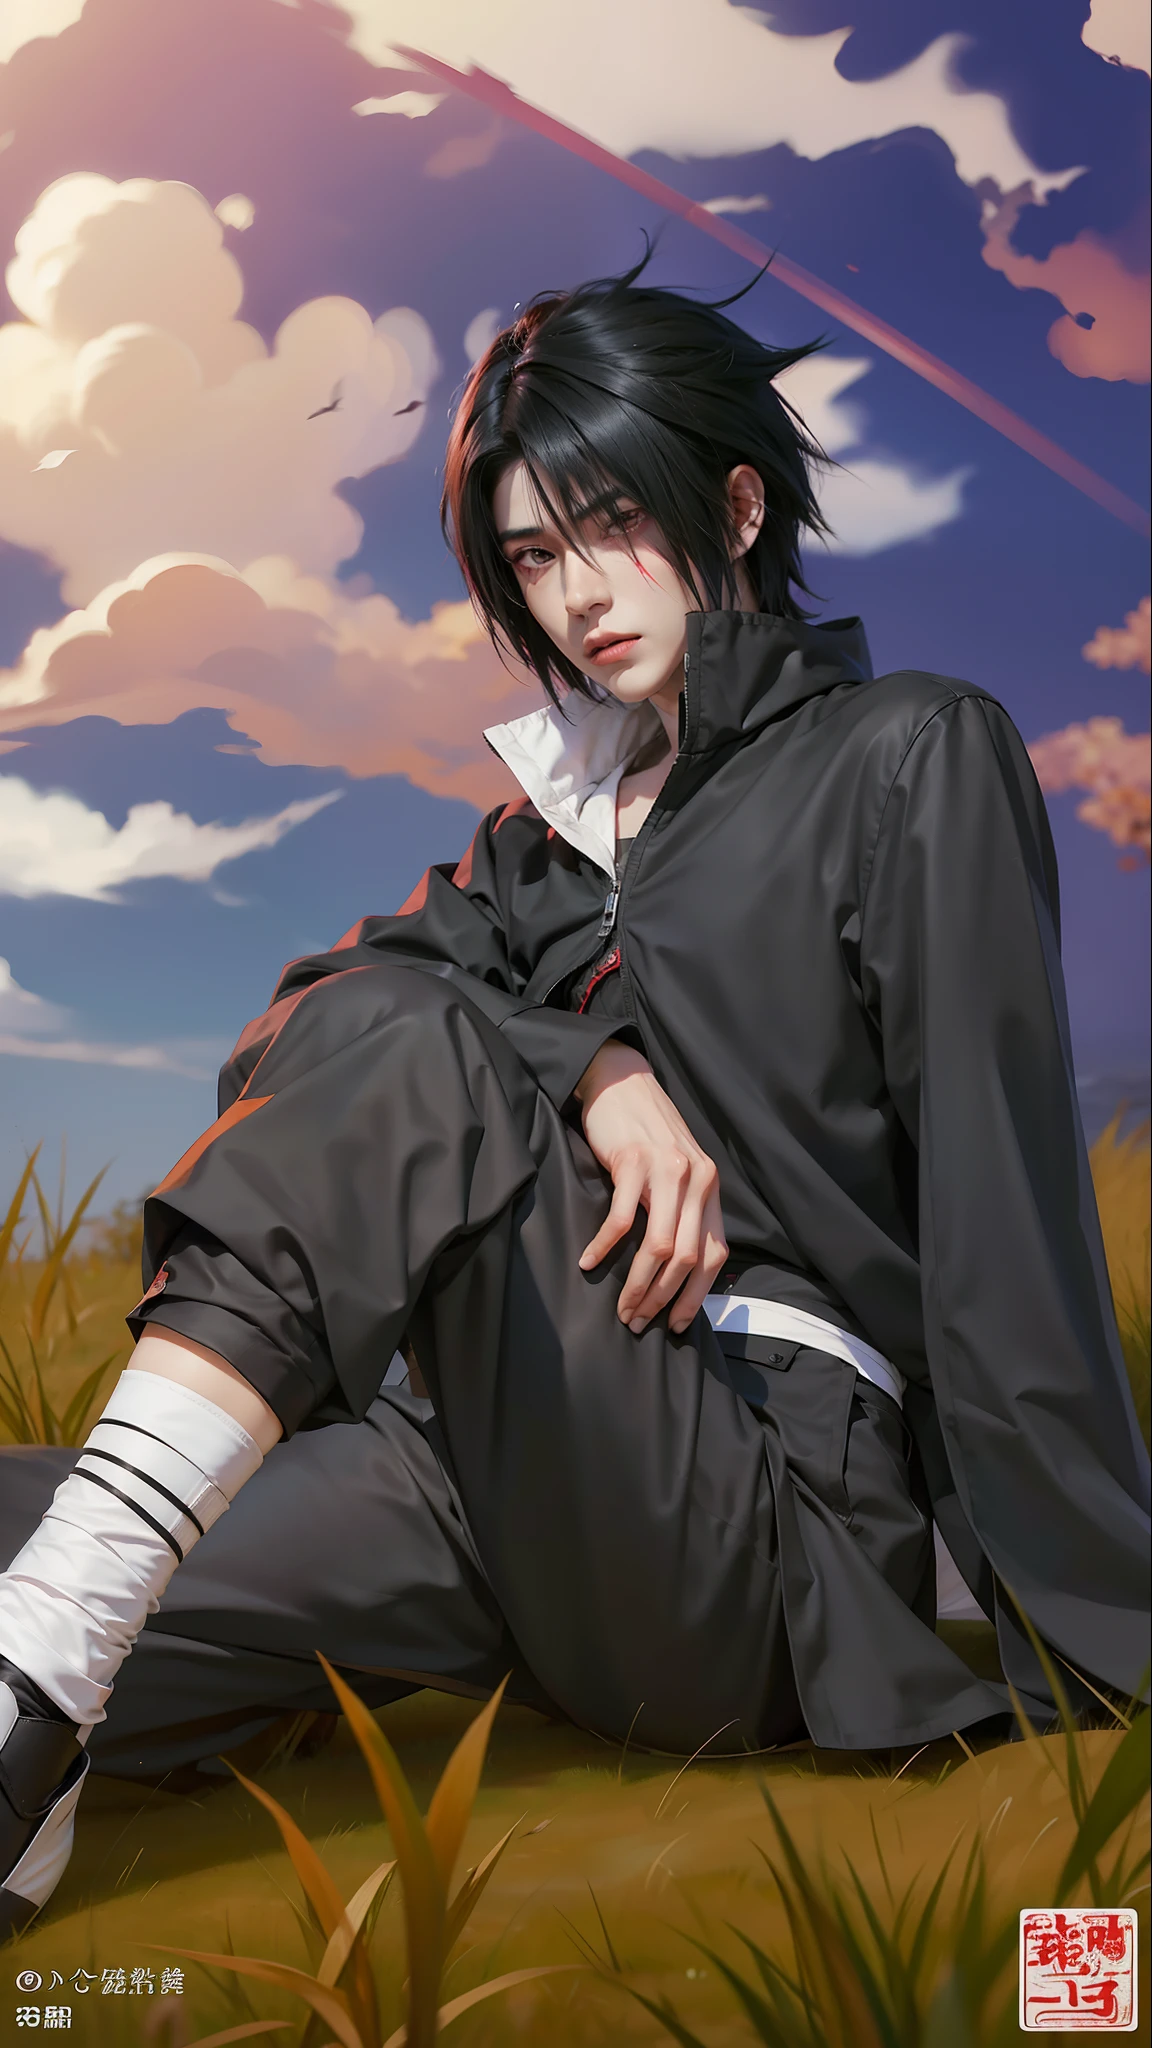 1 homem, uchiha sasuke no anime naruto, cabelo curto , Cabelo preto, olhos vermelhos, bonito, Roupas pretas, realista clothes, roupas detalhadas, fundo ao ar livre, ultra detalhe, realista